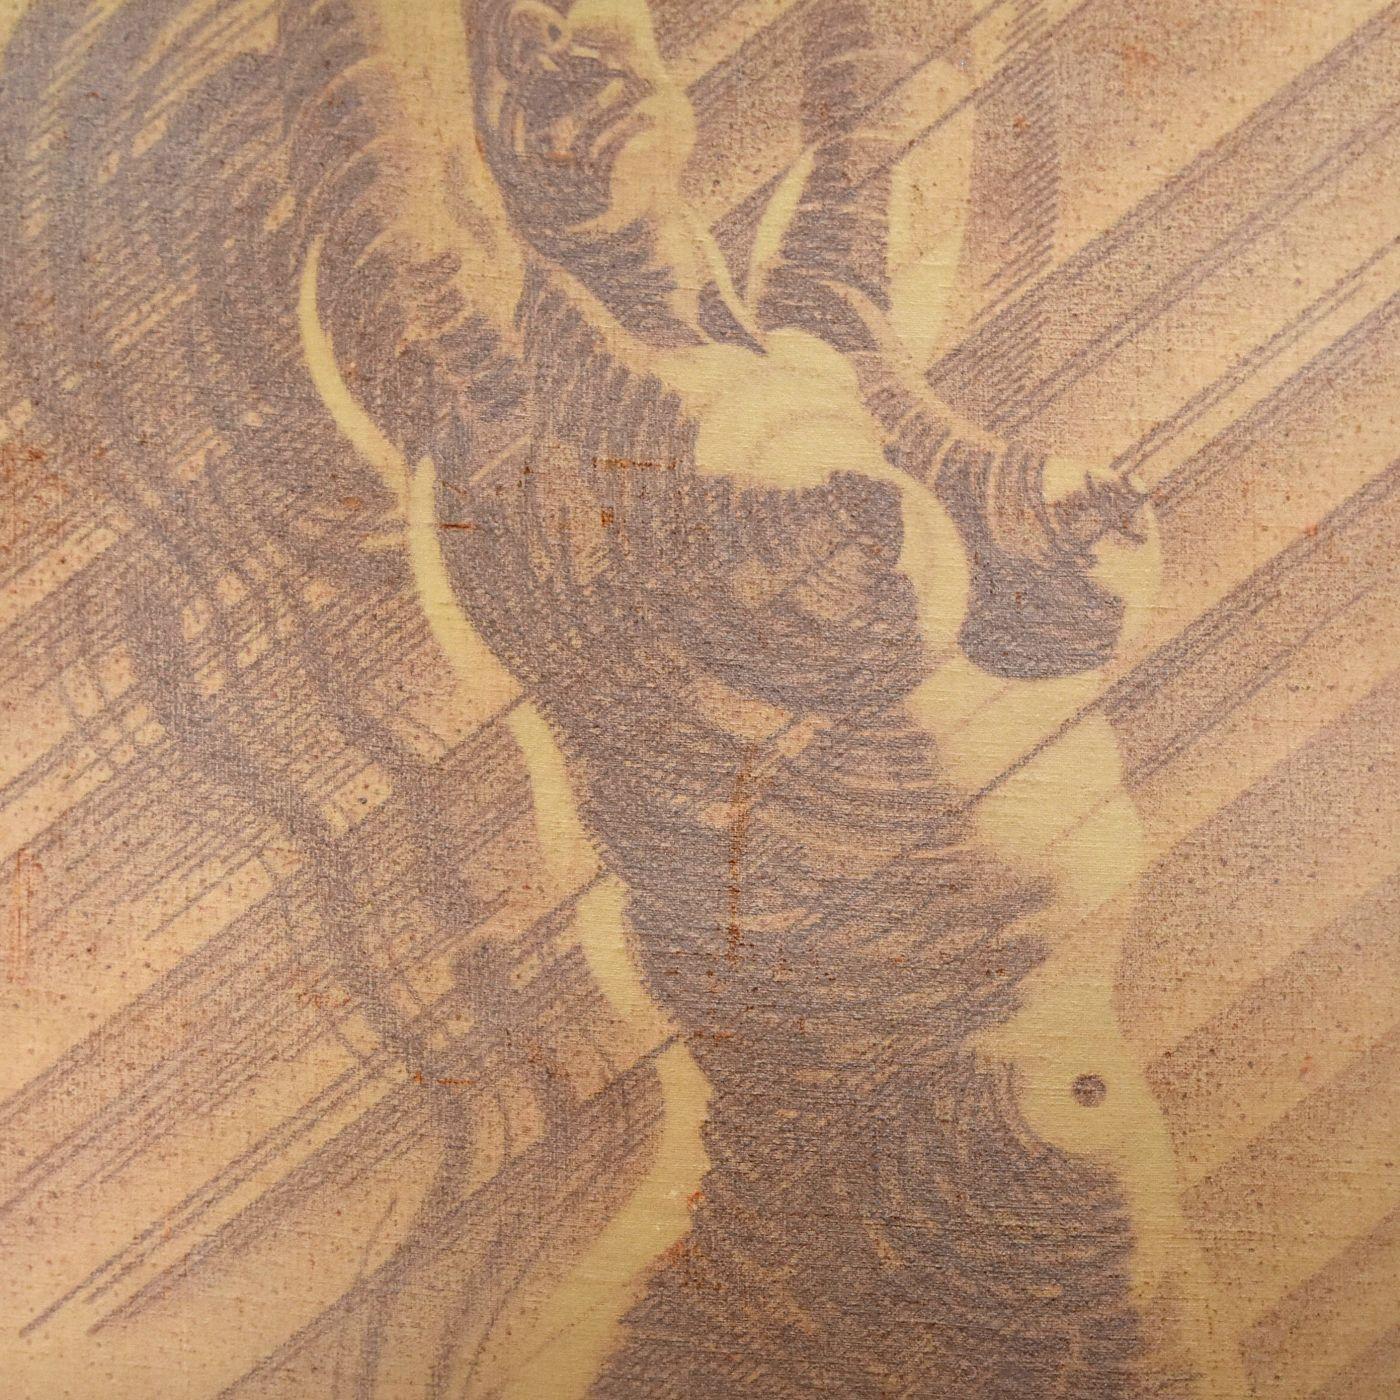 Kohle und Rötel auf französischem Schulstoff Martinez 60er Jahre (124x122 cm), der die Silhouette einer Frau darstellt.